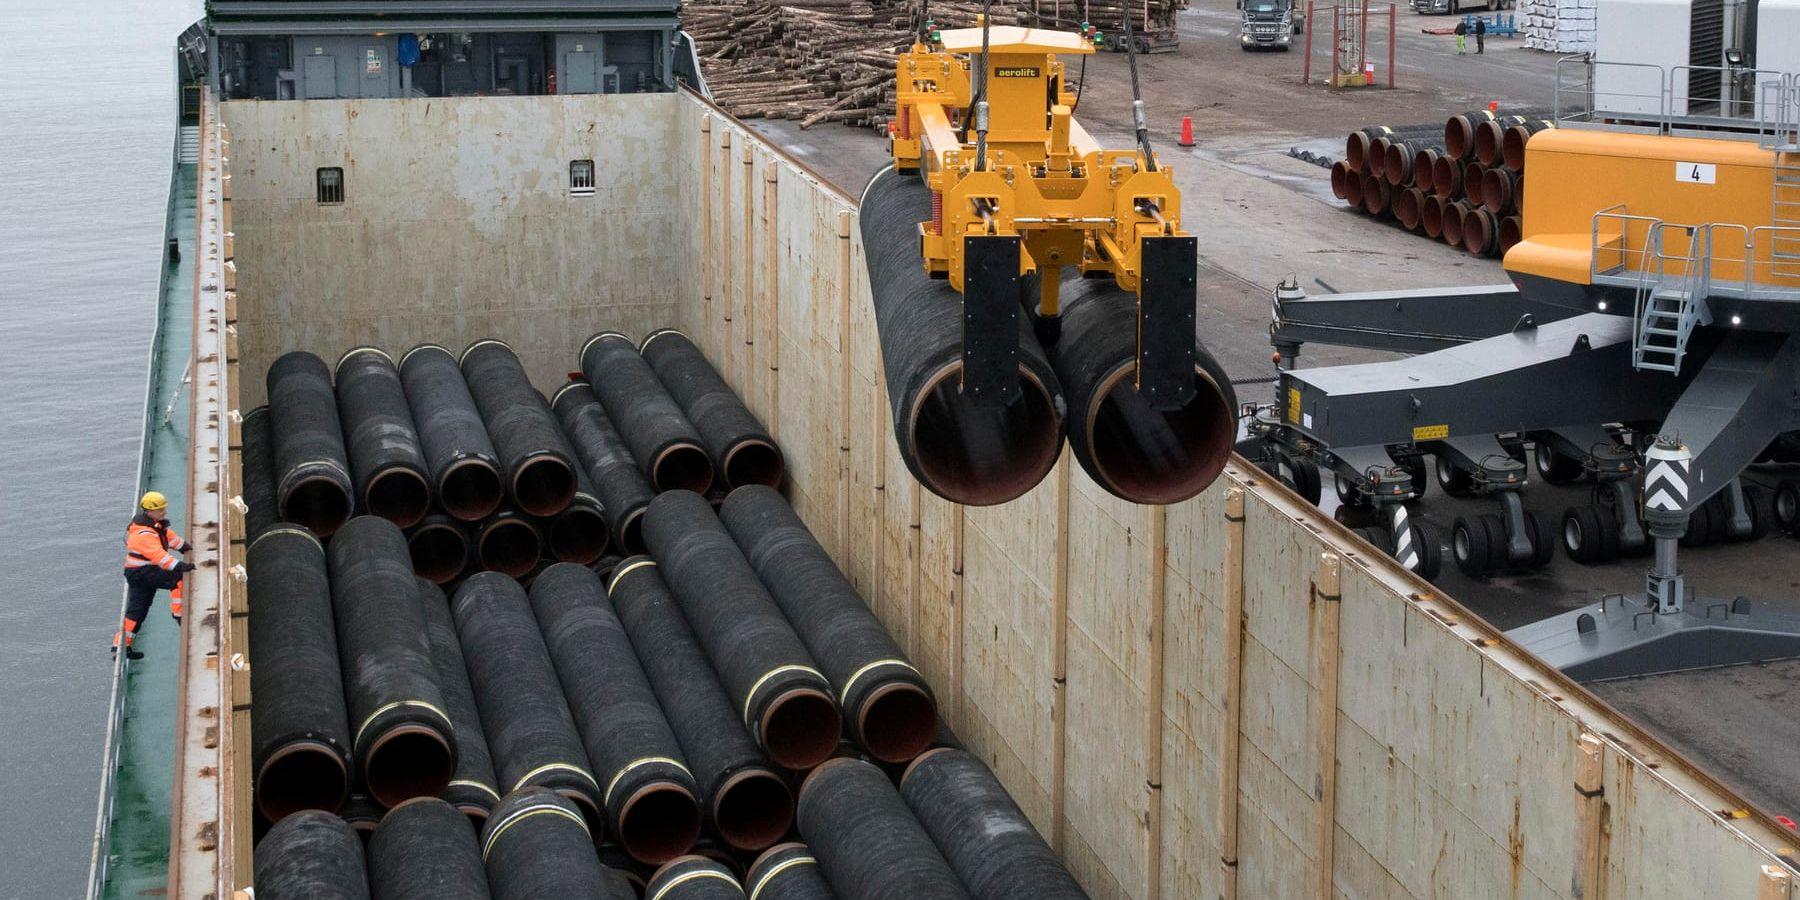 Rör som ska användas för att bygga Nord Stream 2 lastas i hamnen i Karlshamn. Arkivbild.